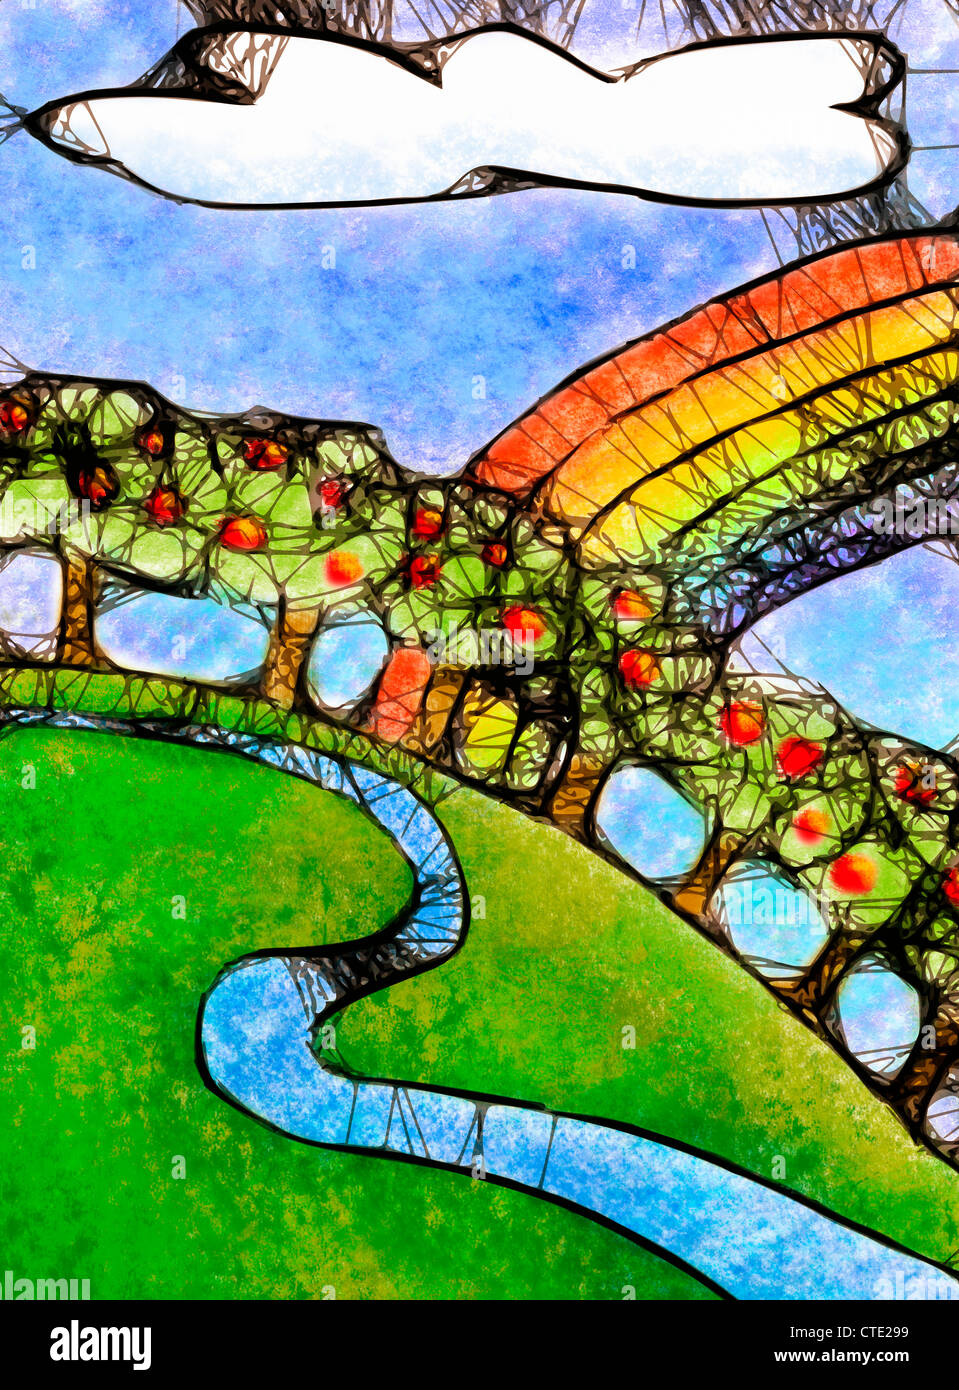 Abbildung der stilisierten Apfelbäume auf einem grasbewachsenen Hügel mit bunten Regenbogen Stockfoto